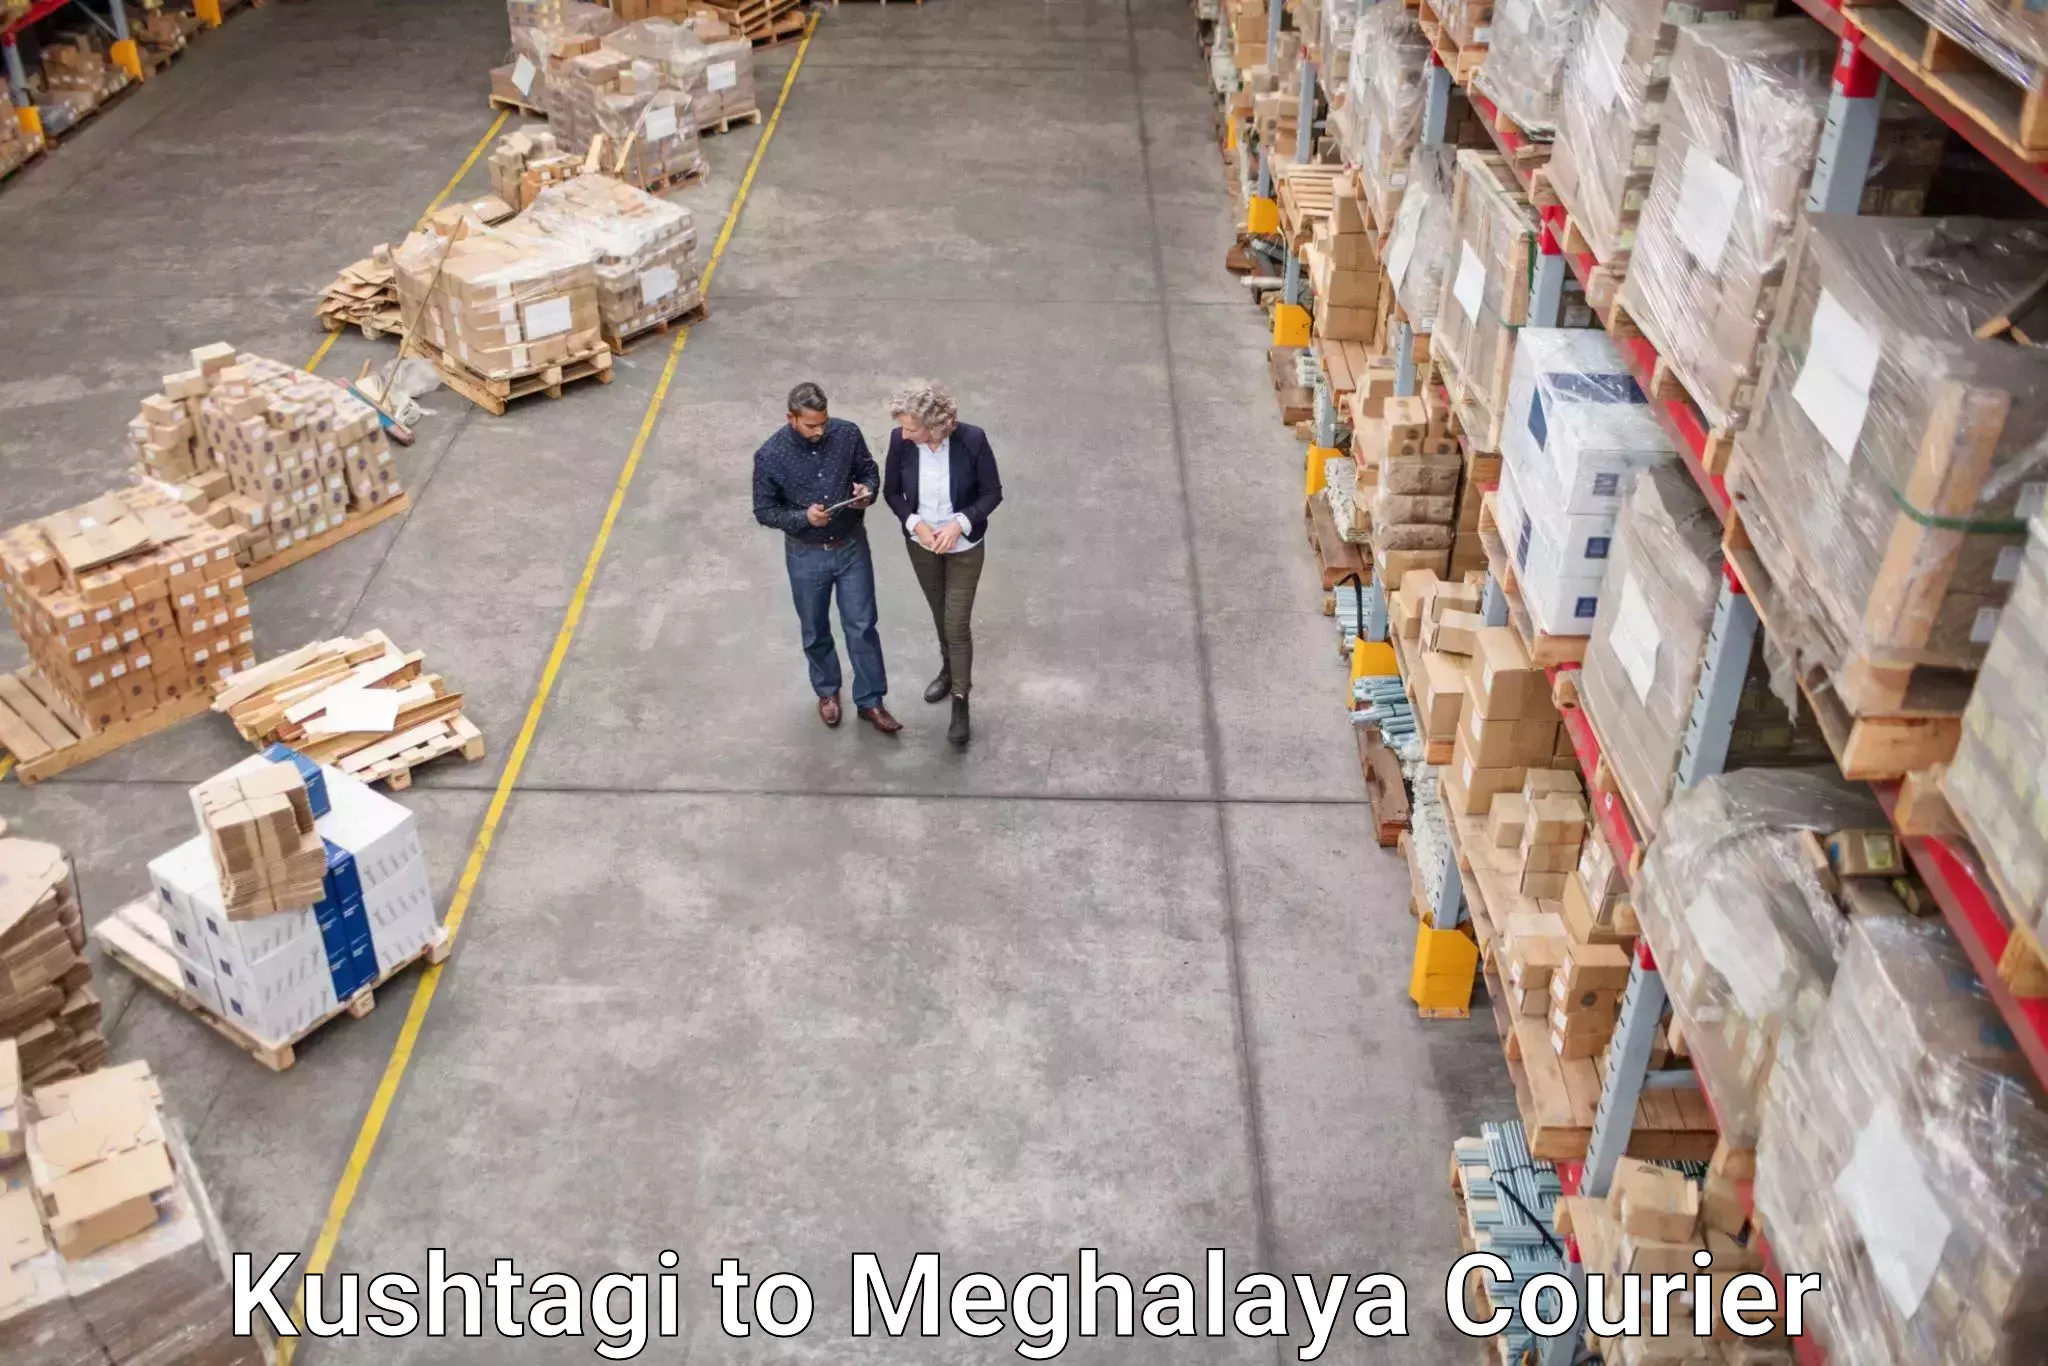 24/7 courier service Kushtagi to Meghalaya